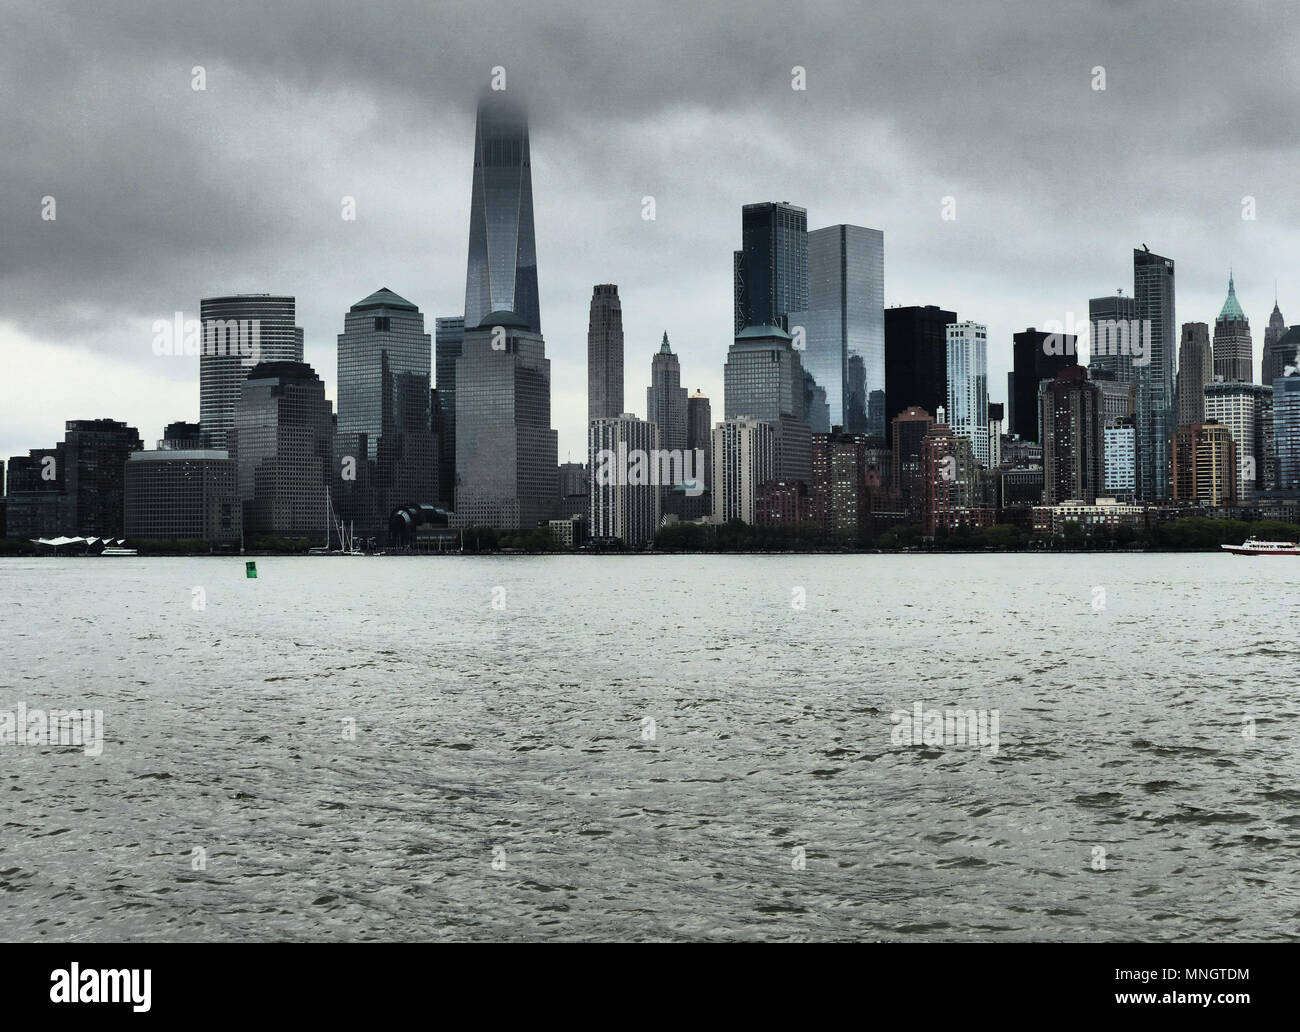 Skyline di New York, il centro di Manhattan, grattacieli, Manhattan, Freedom Tower, World Trade Center, giorno nuvoloso, cielo nuvoloso Foto Stock